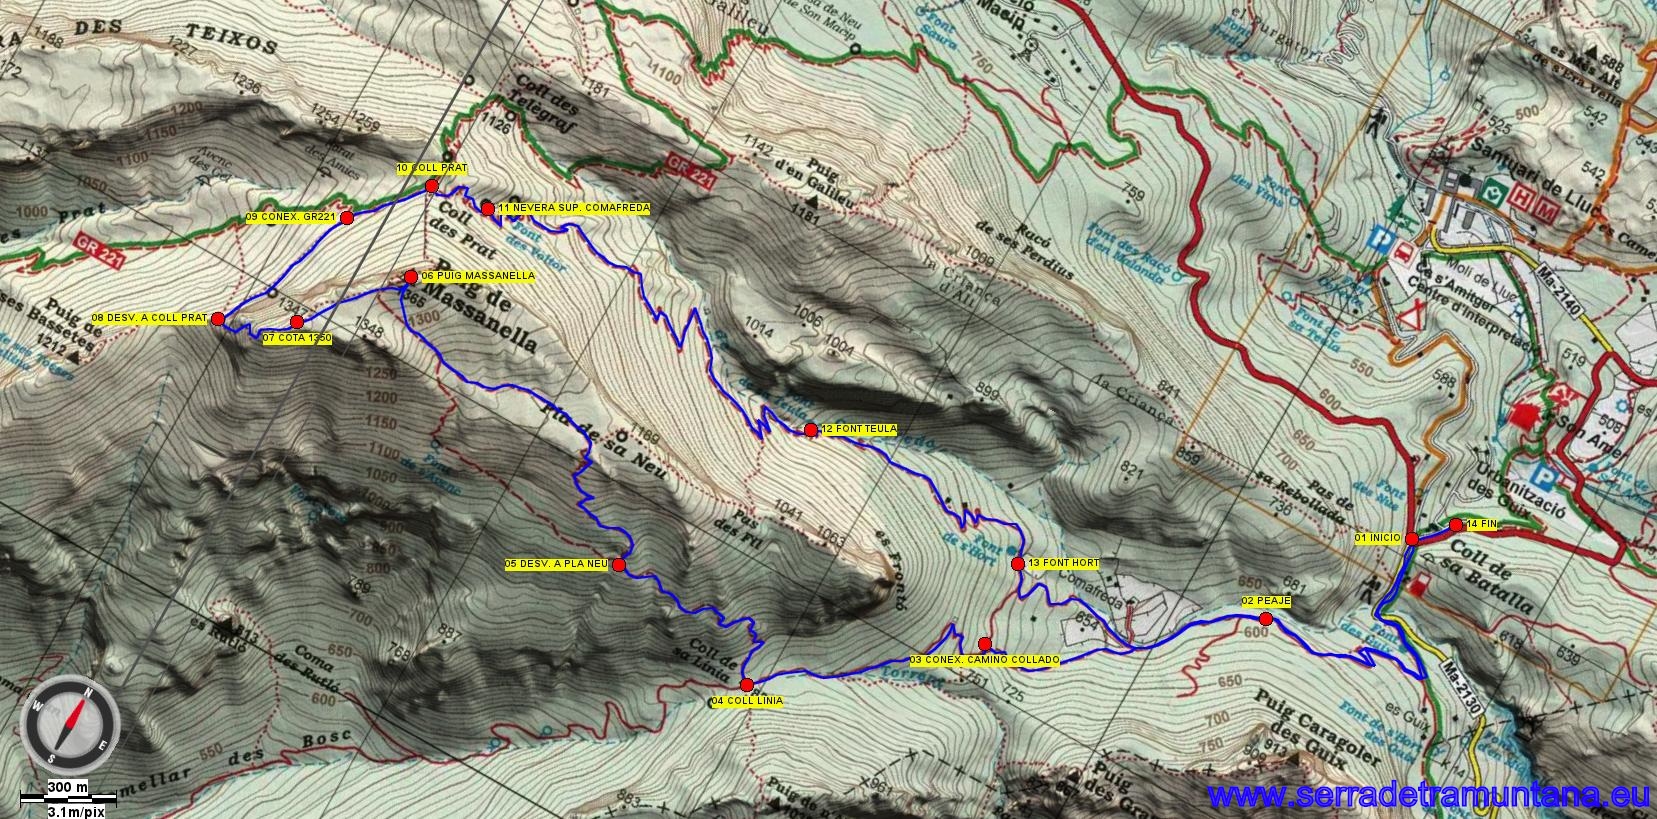 Recorte del mapa de Alpina con la ruta realizada